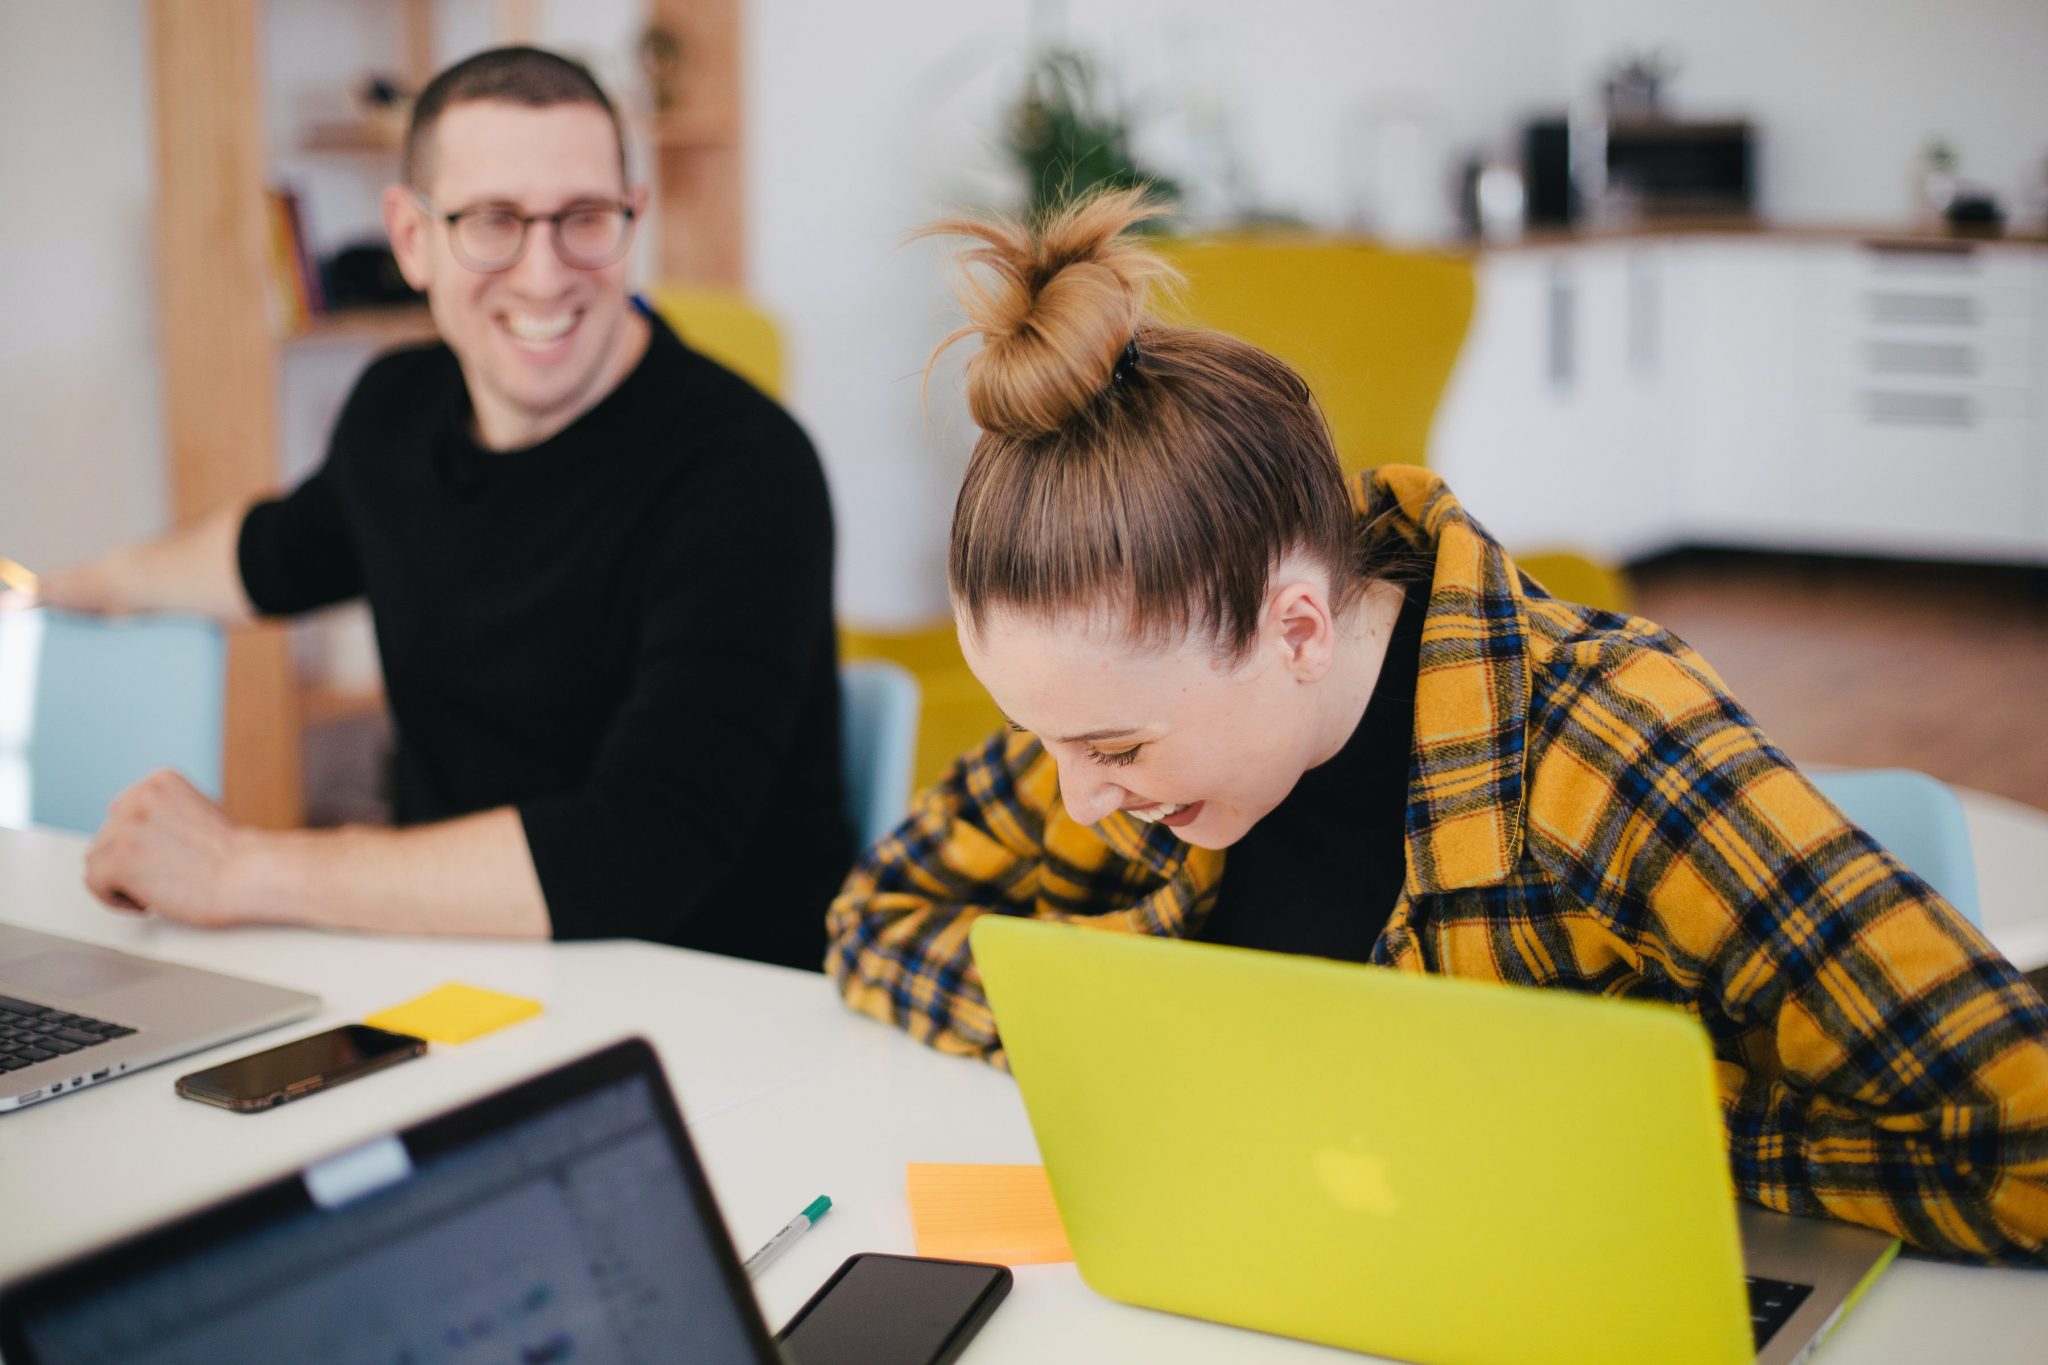 Eine junge Frau sitzt an einem Gruppentisch und lacht, vor ihr ein gelber Laptop, neben ihr im Hintergrund ein junger Mann, der sich ebenfalls amüsiert. Sie sind Teil eines digitalen Teams.